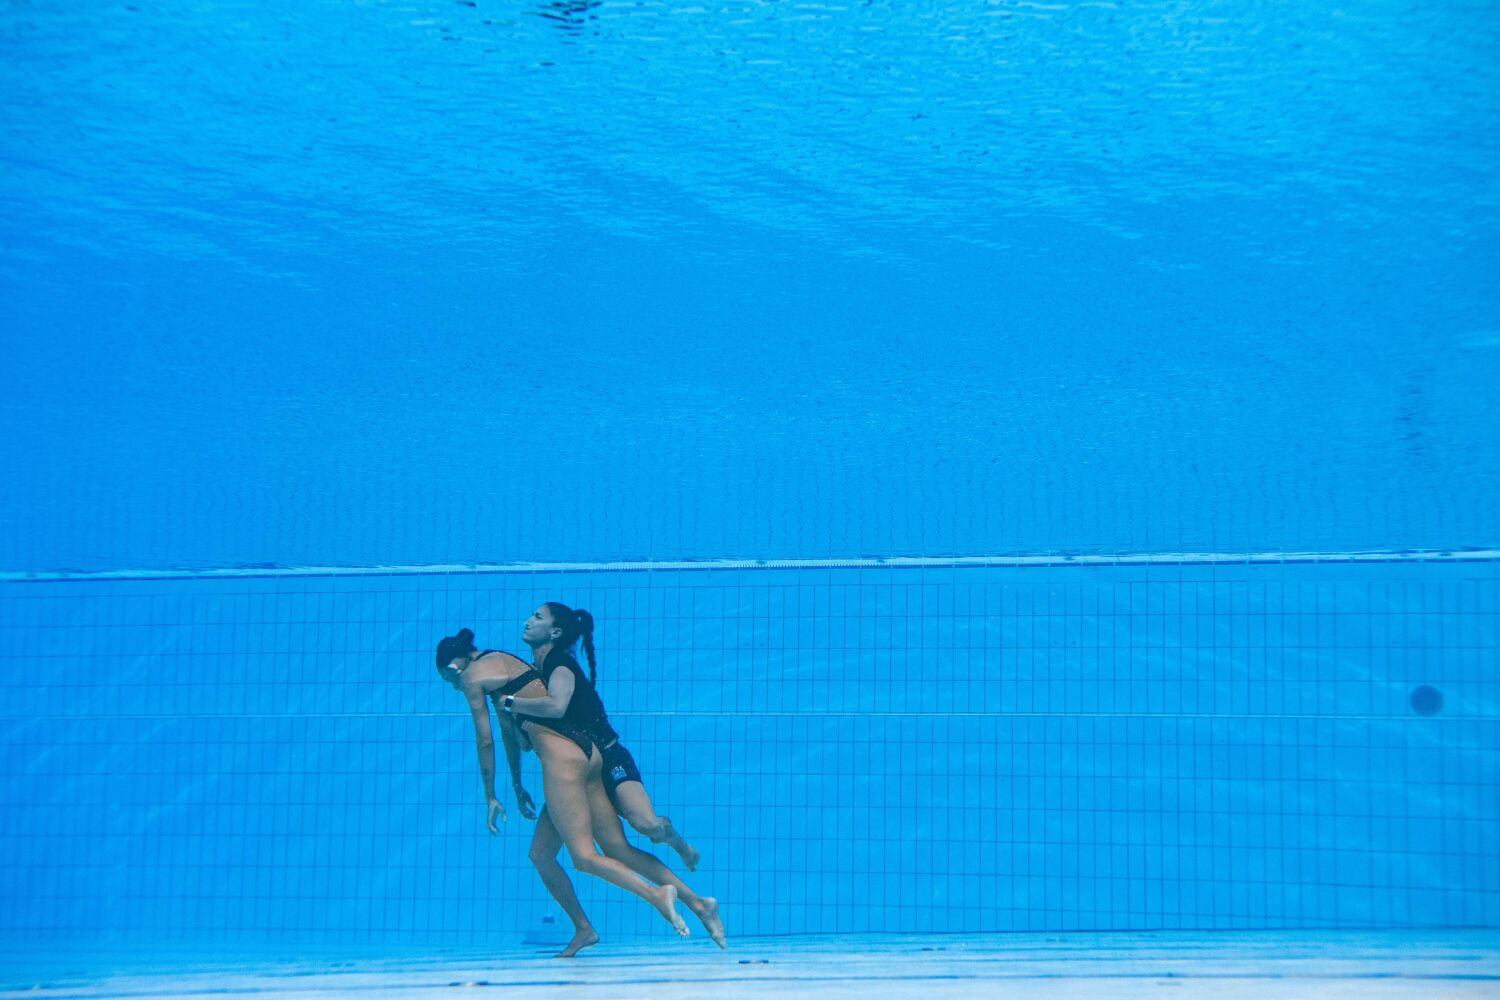 Dramatik fotoğraflar, ABD'li antrenörün yüzücü Anita Alvarez'i dünya şampiyonalarında kurtarmak için dalışa geçtiğini gösteriyor